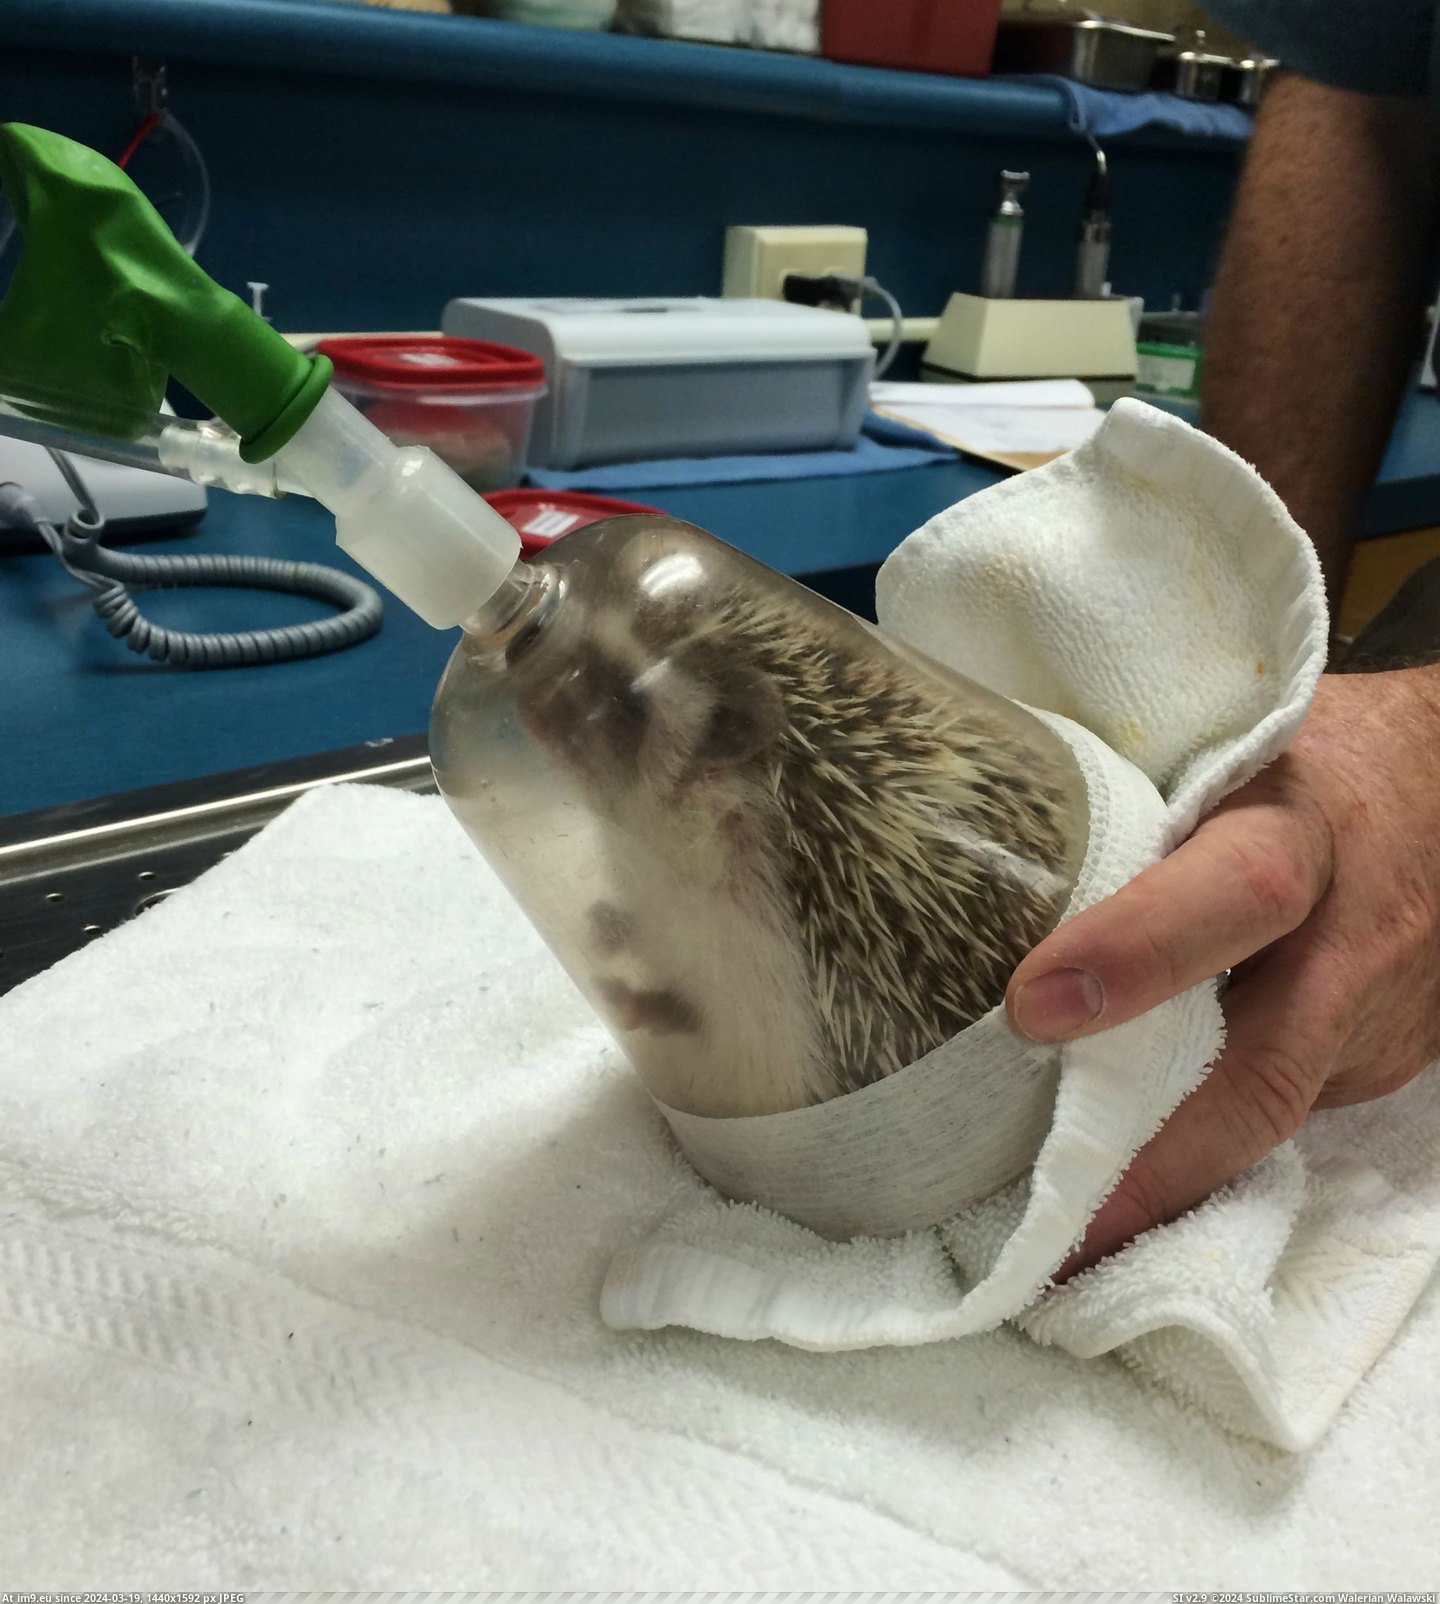 #Album #Oral #Anesthesia #Hedgehog #Exam [Aww] My hedgehog just had anesthesia for an oral exam [album] 9 Pic. (Bild von album My r/AWW favs))